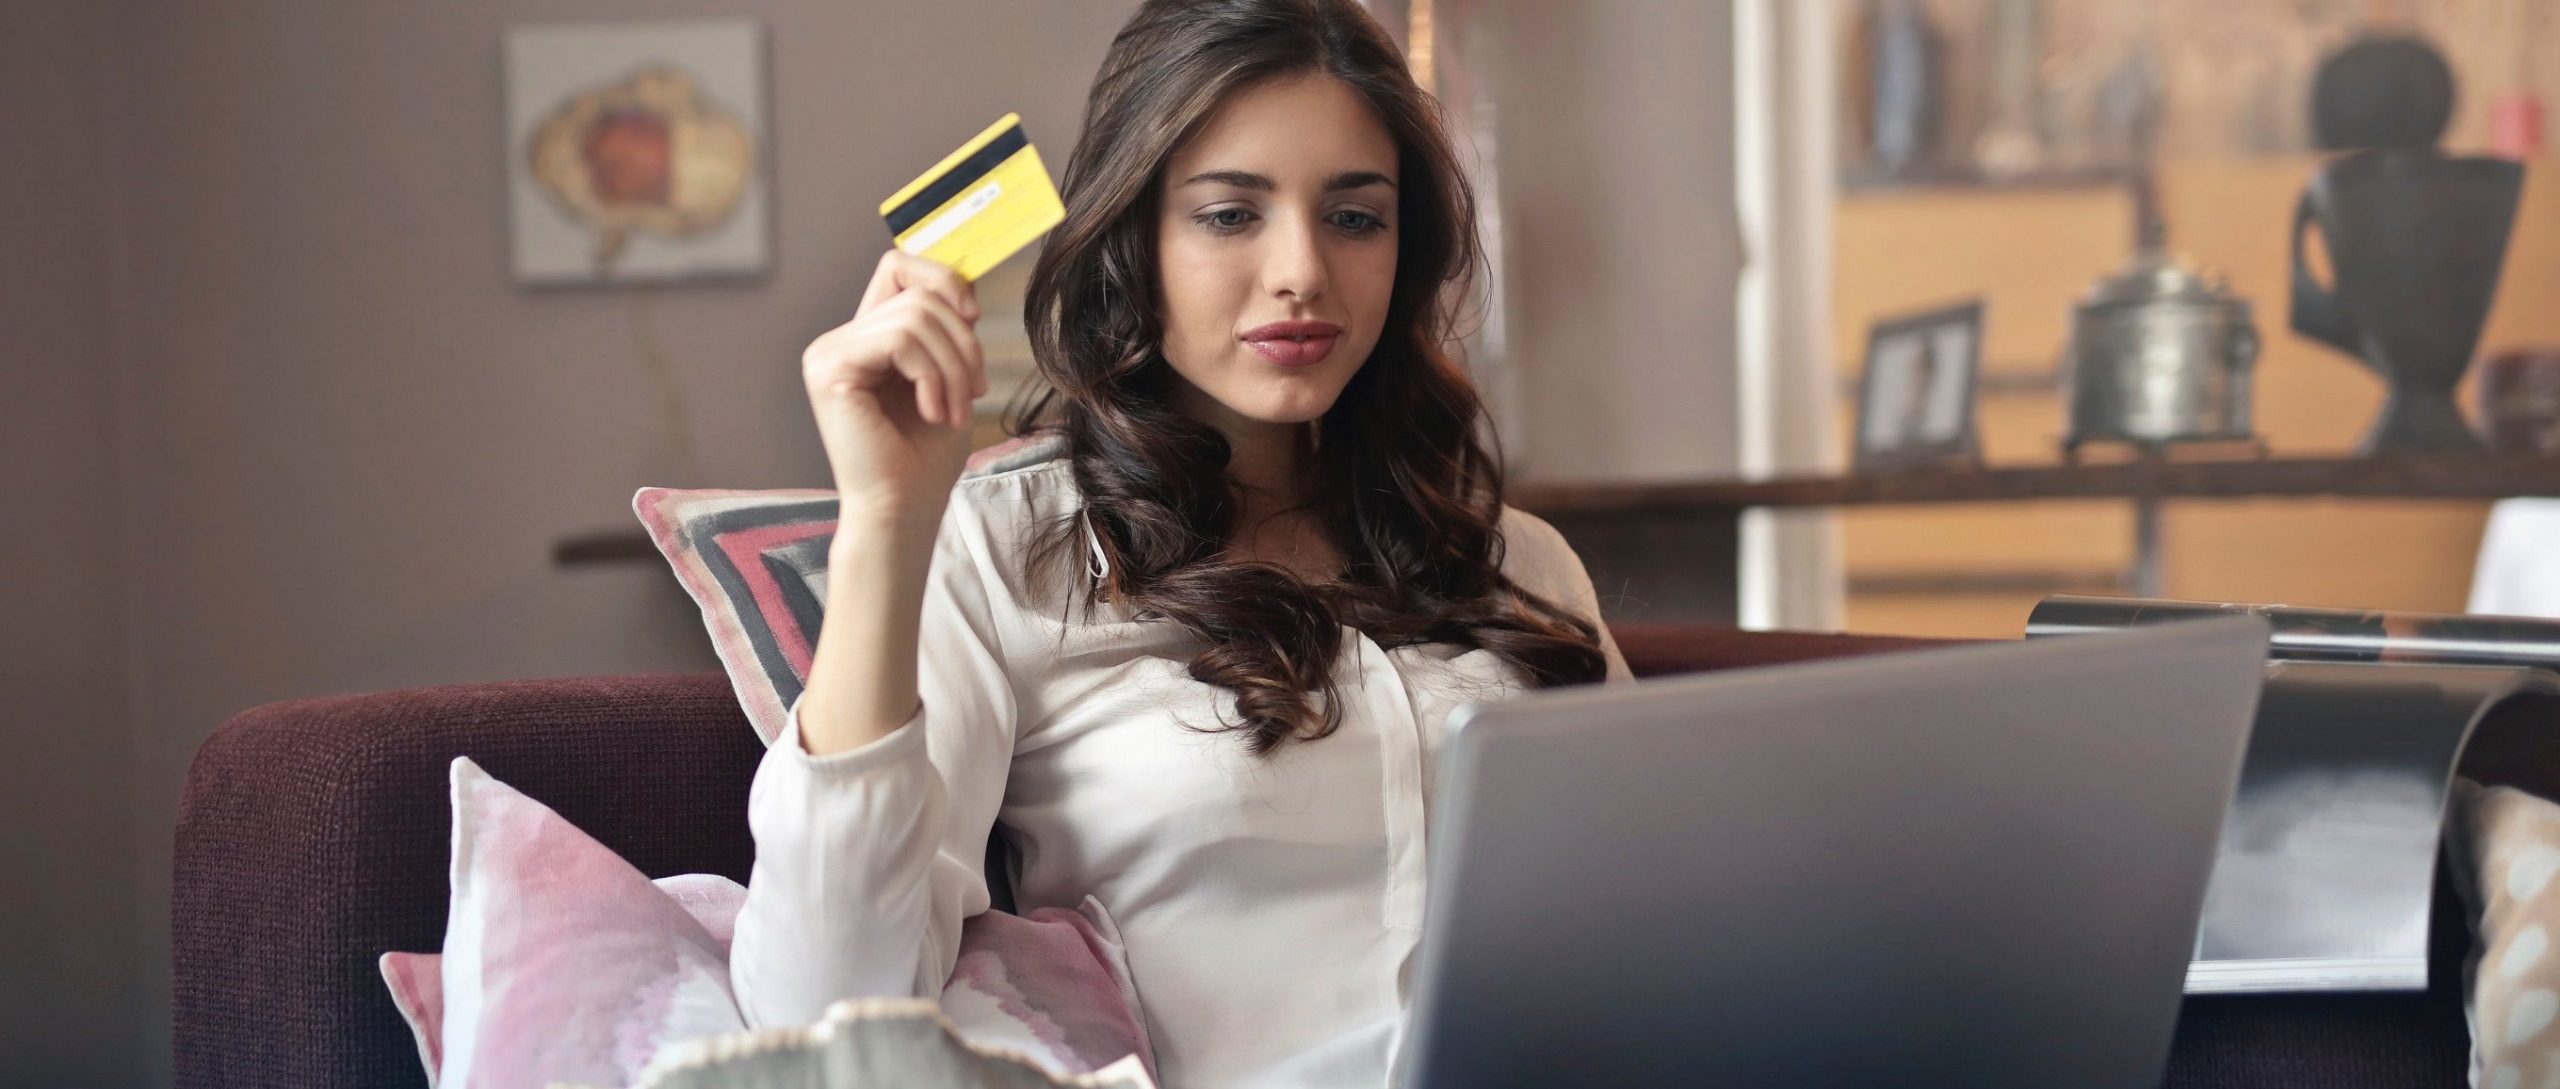 esendex black friday online shopping frau kreditkarte